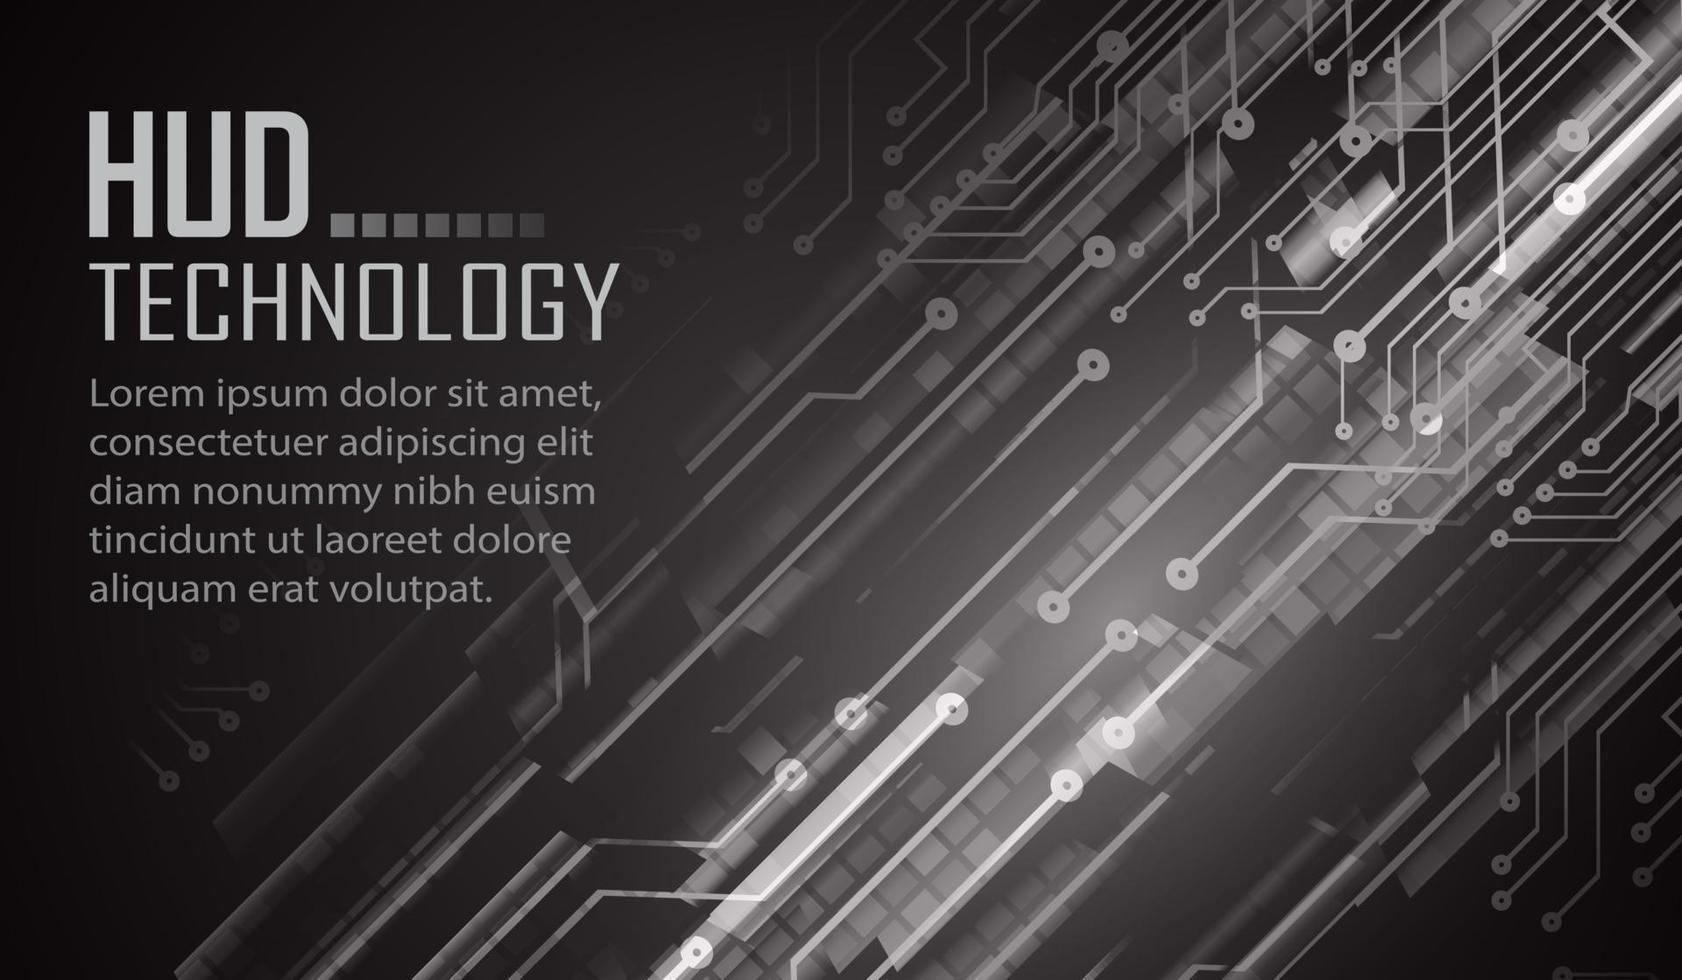 texte cyber circuit futur technologie concept arrière-plan vecteur